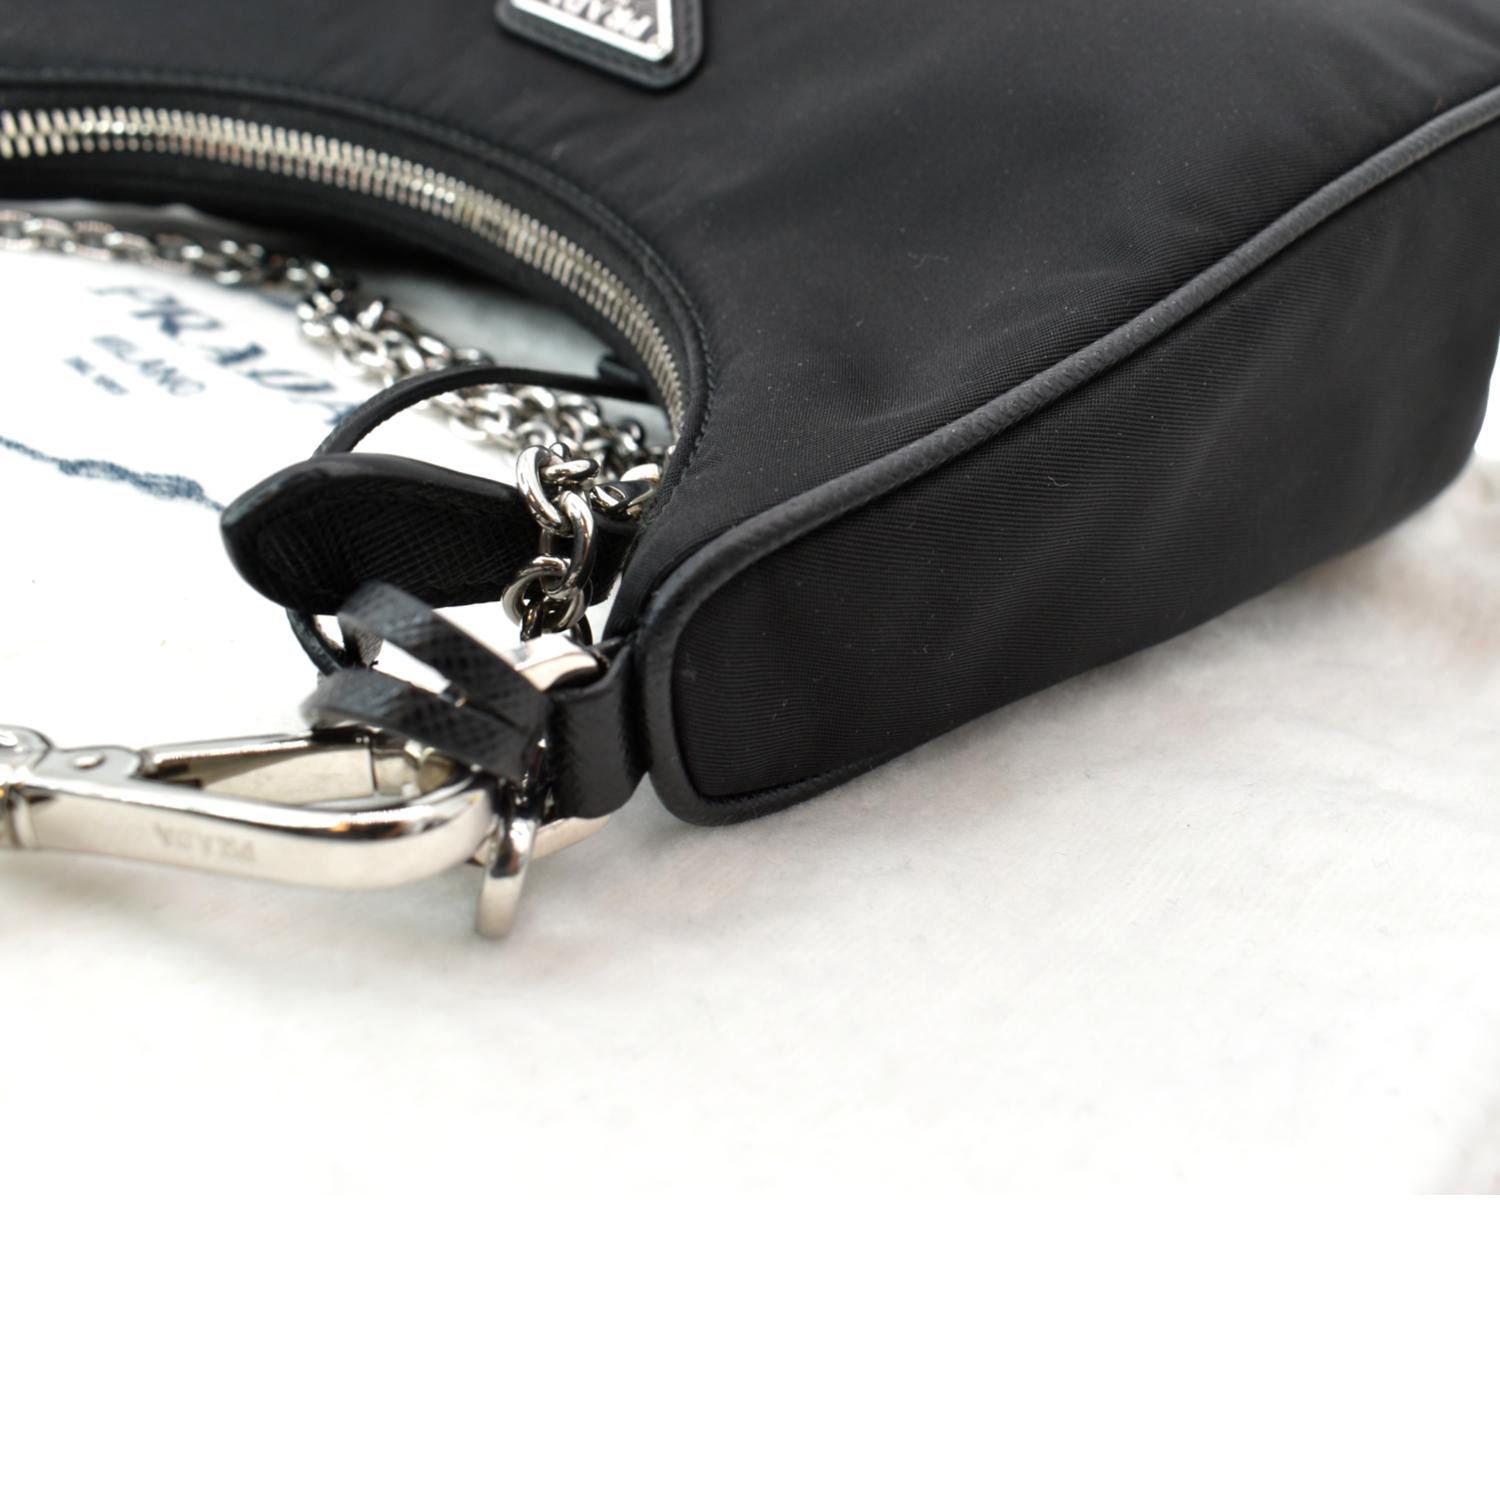 Prada Re-Edition 2005 Shoulder Bag Nylon Black in Nylon/Saffiano Leather  with Silver-tone - US